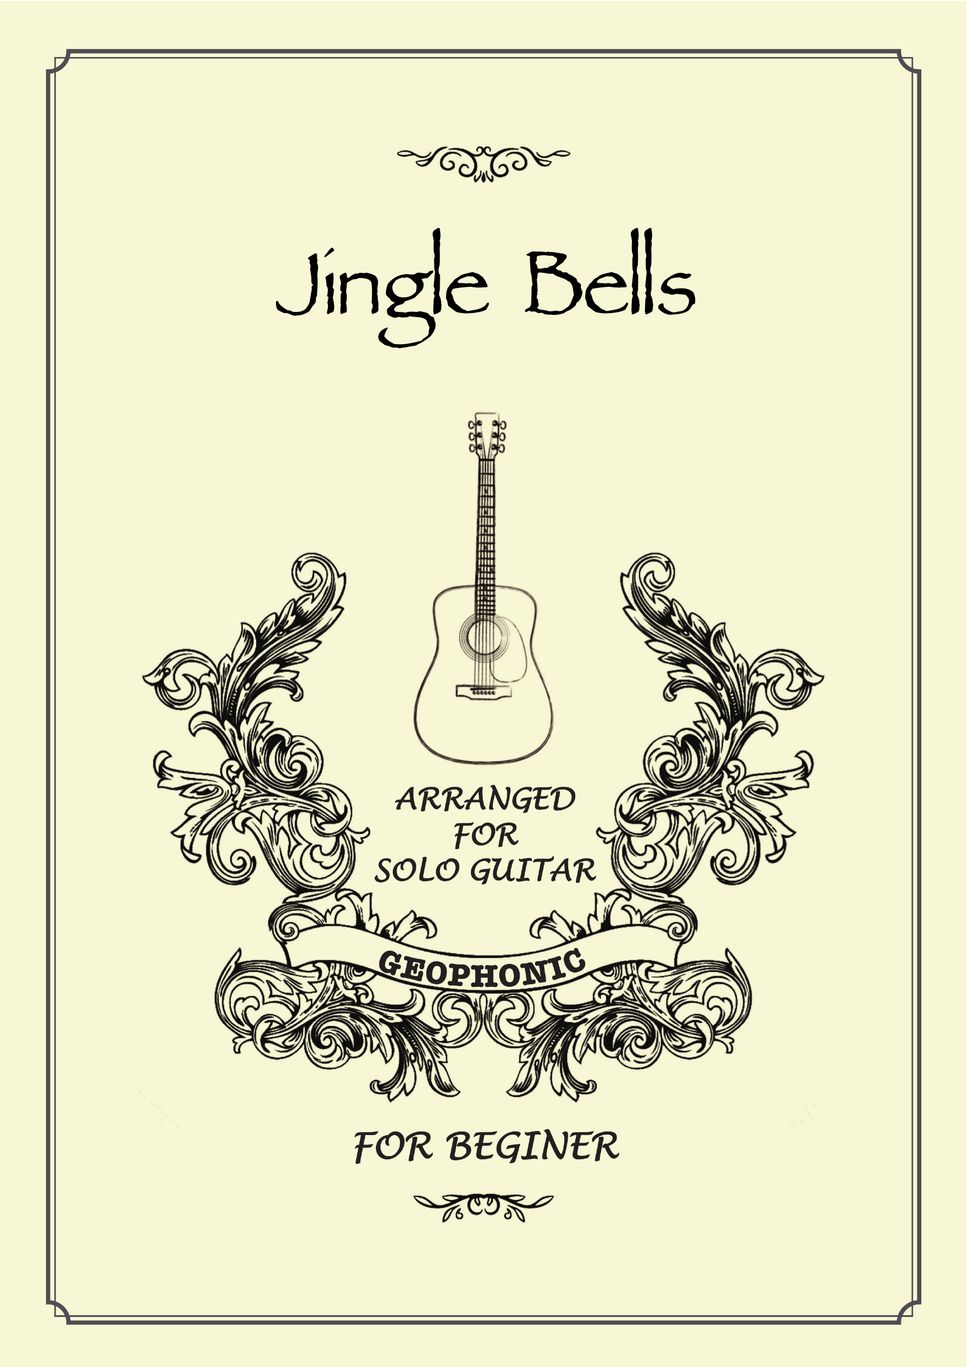 Jingle Bells by GEOPHONIC